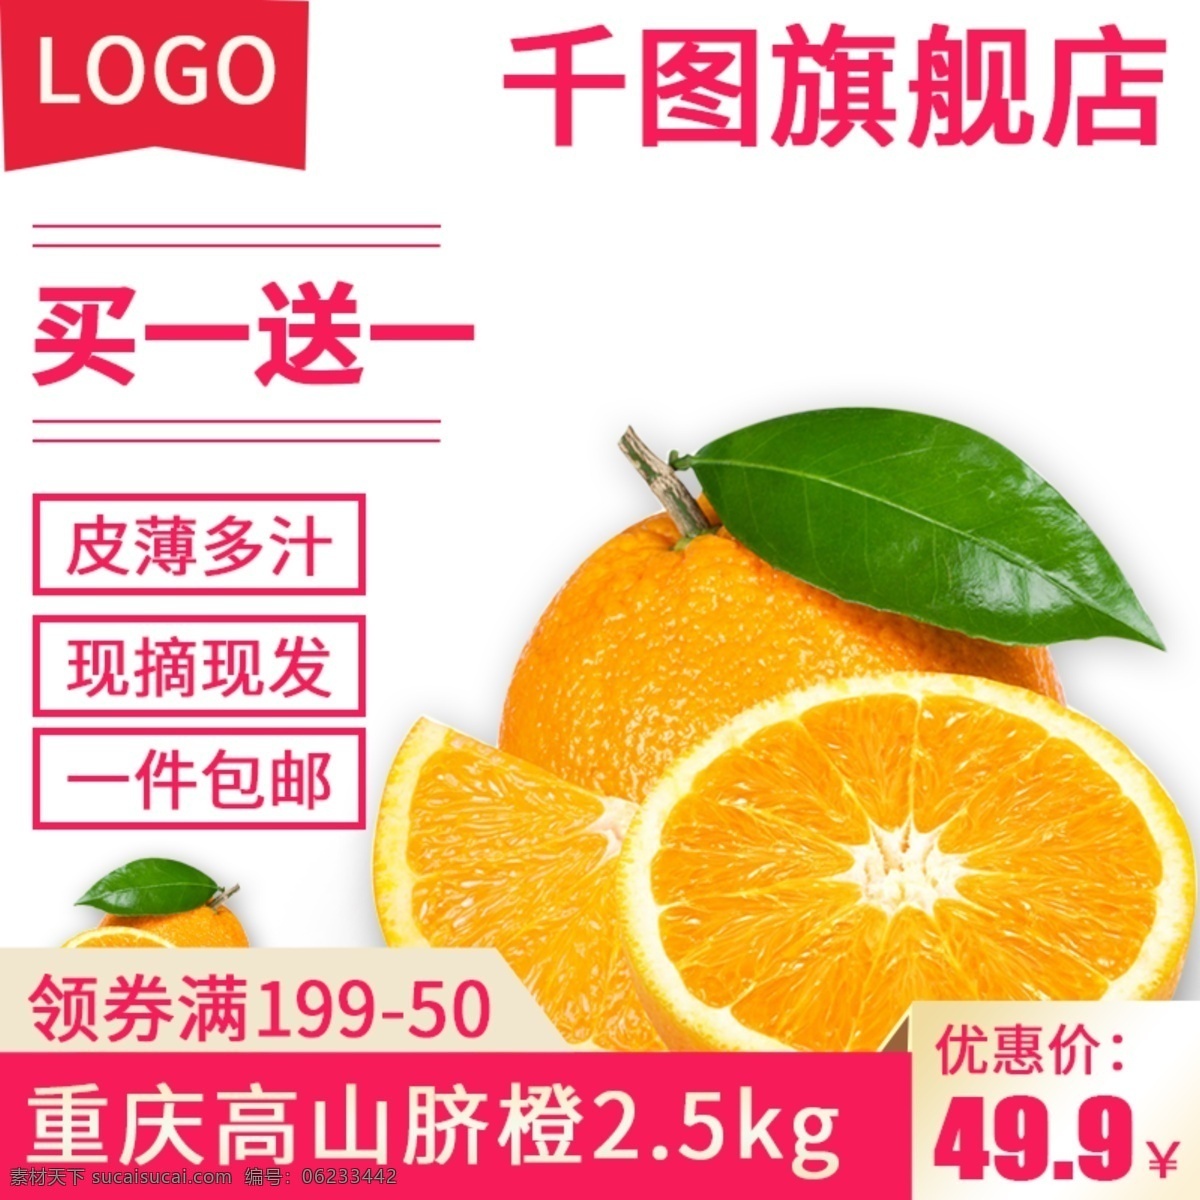 电商 淘宝 水果 生鲜 橙子 主 图 直通车 电商淘宝 水果生鲜 主图